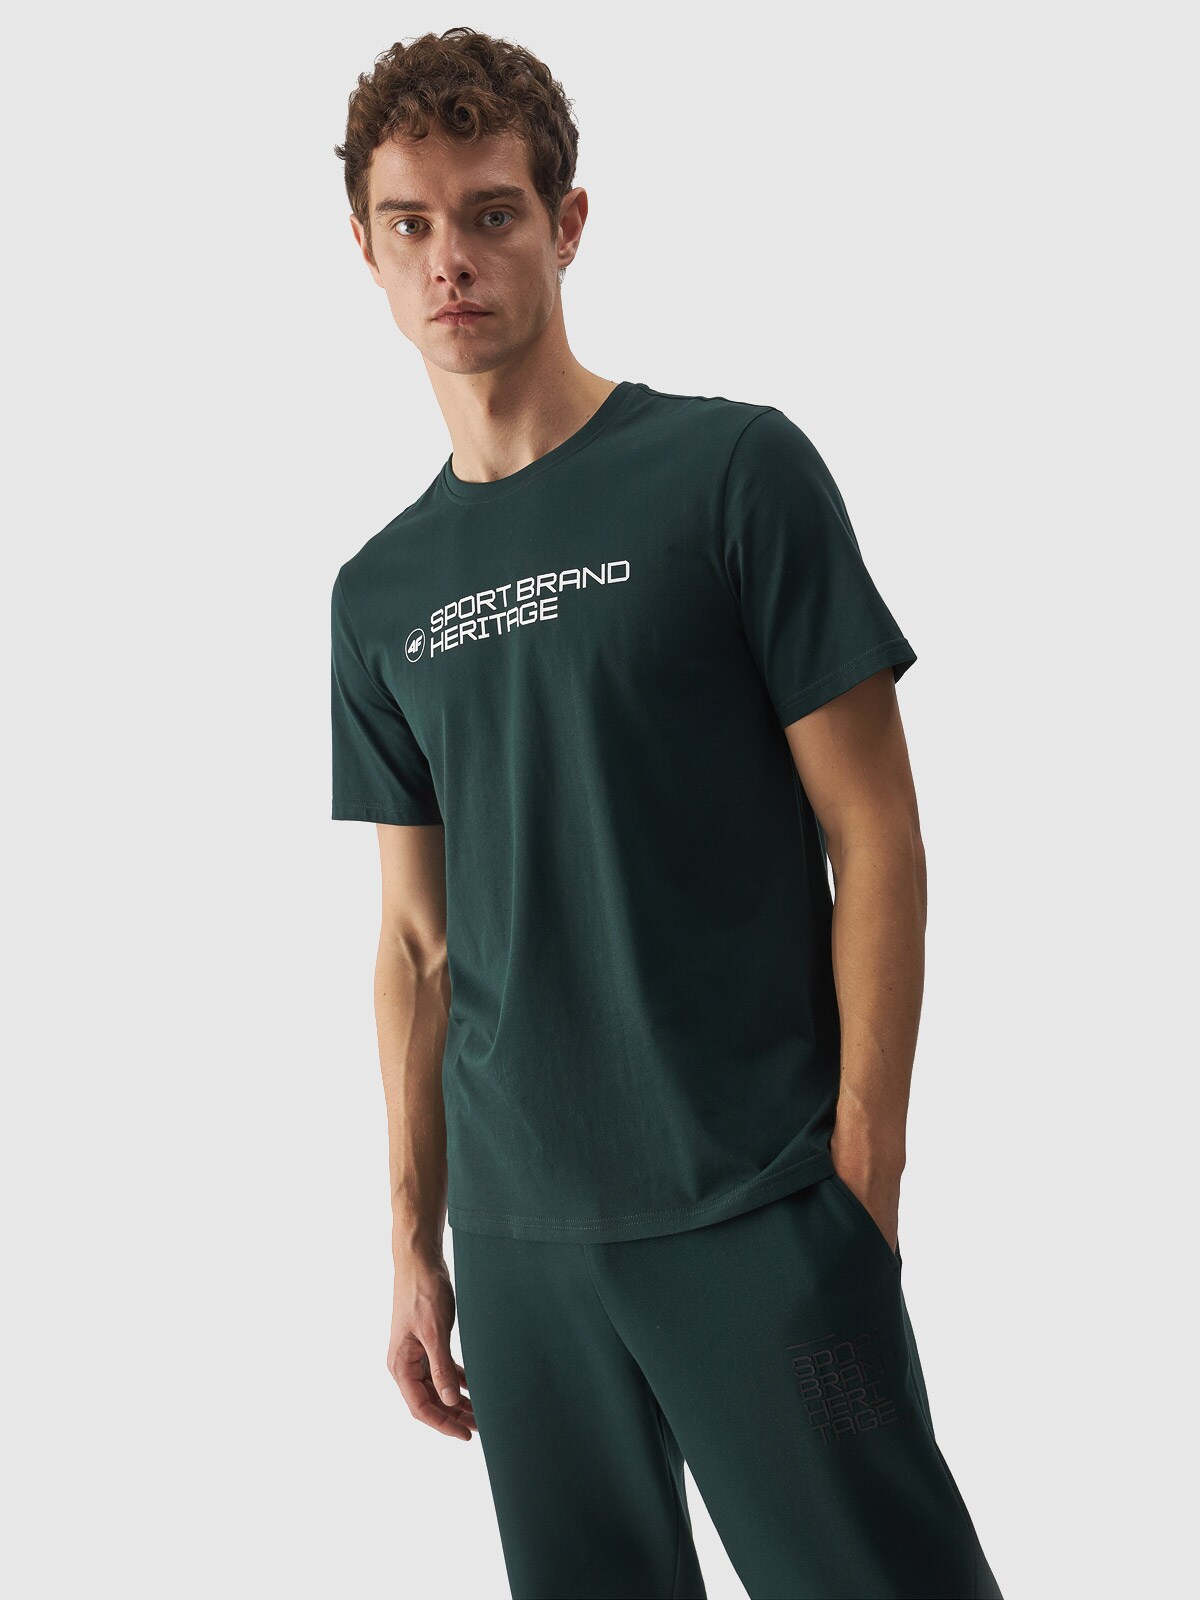 Pánske regular tričko s potlačou - zelené